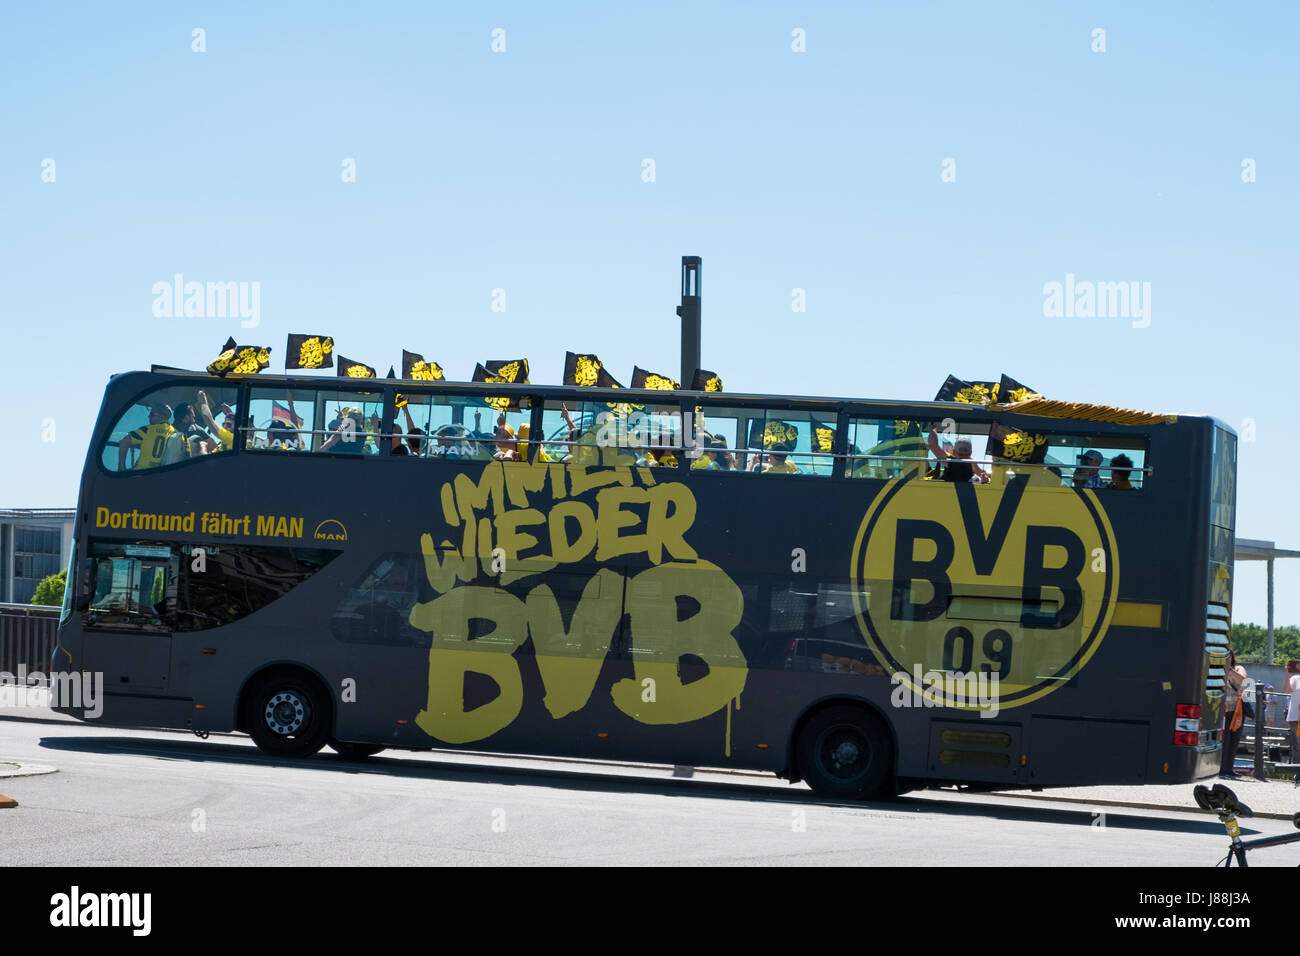 Berlin, Deutschland - 27. Mai 2017: BVB-Fans / Borussia Dortmund Fan Bus am Tag des DFB-Pokal Finale in Berlin. Stockfoto